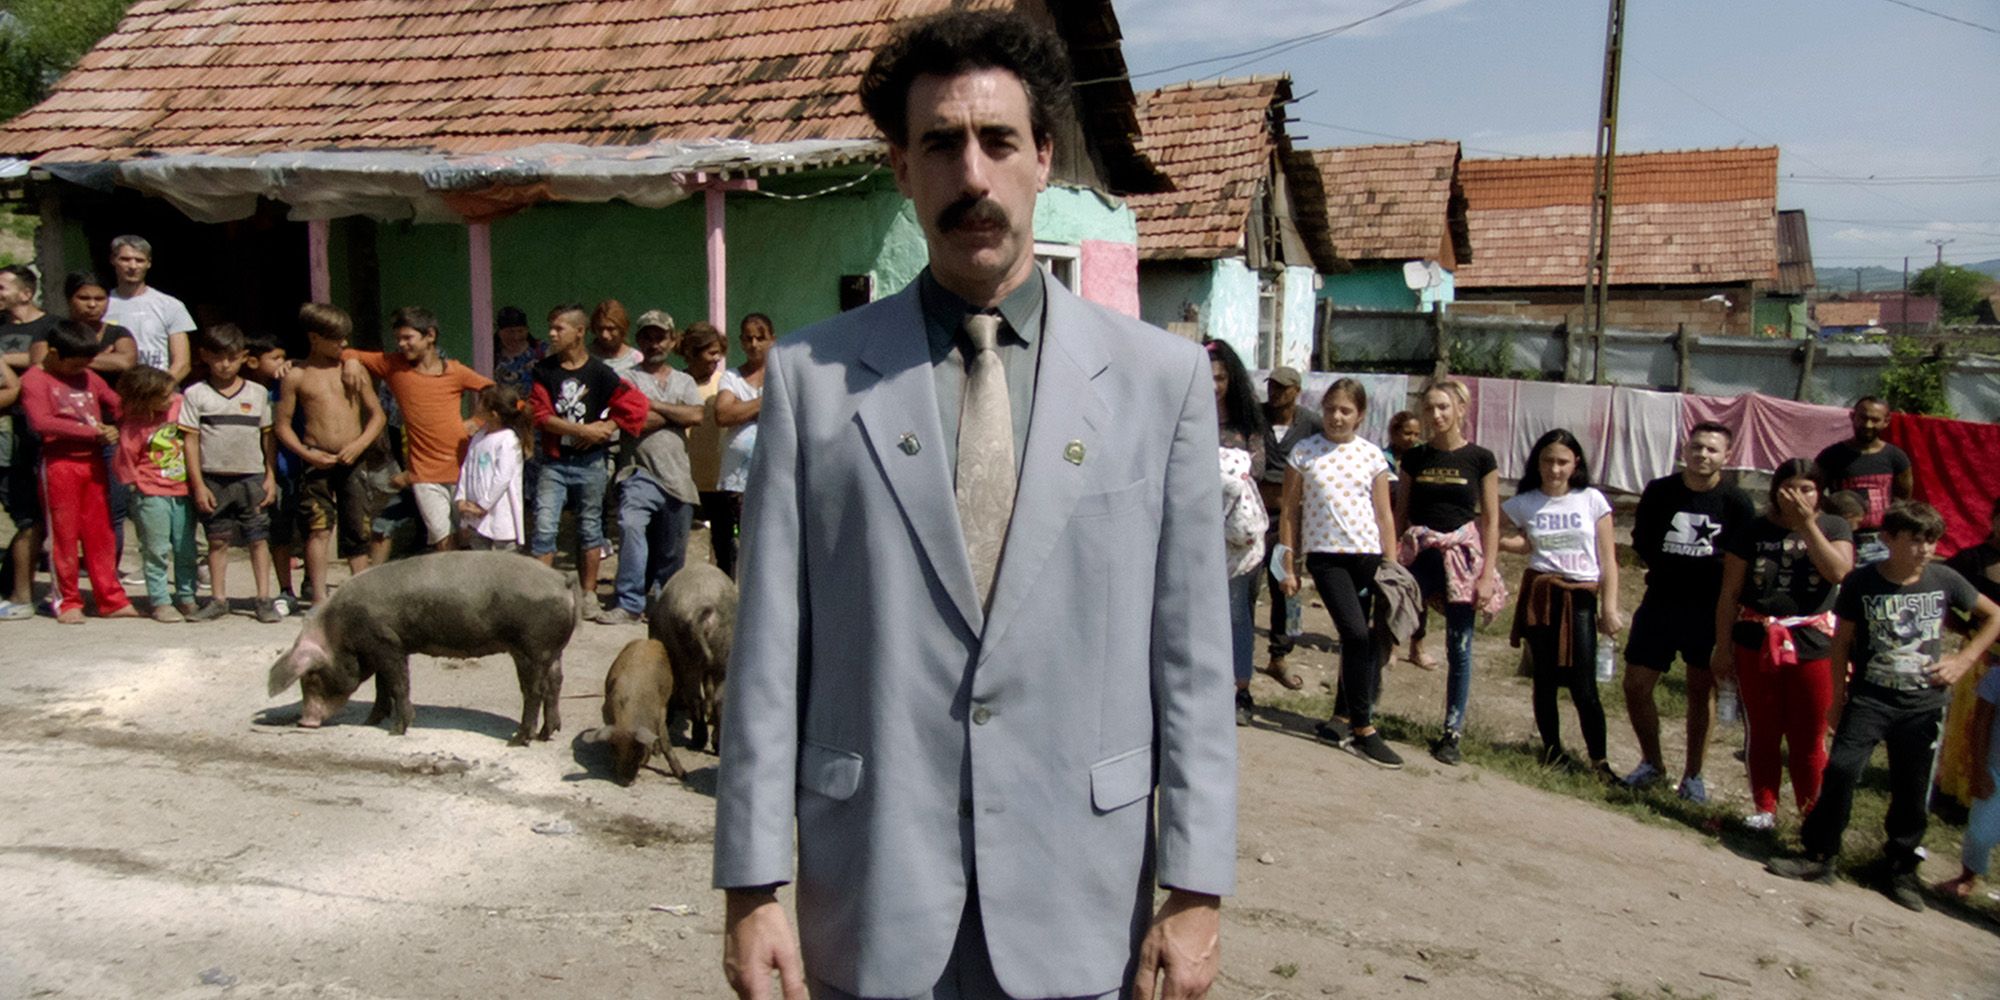 Borat Subsequent Movie film image 2